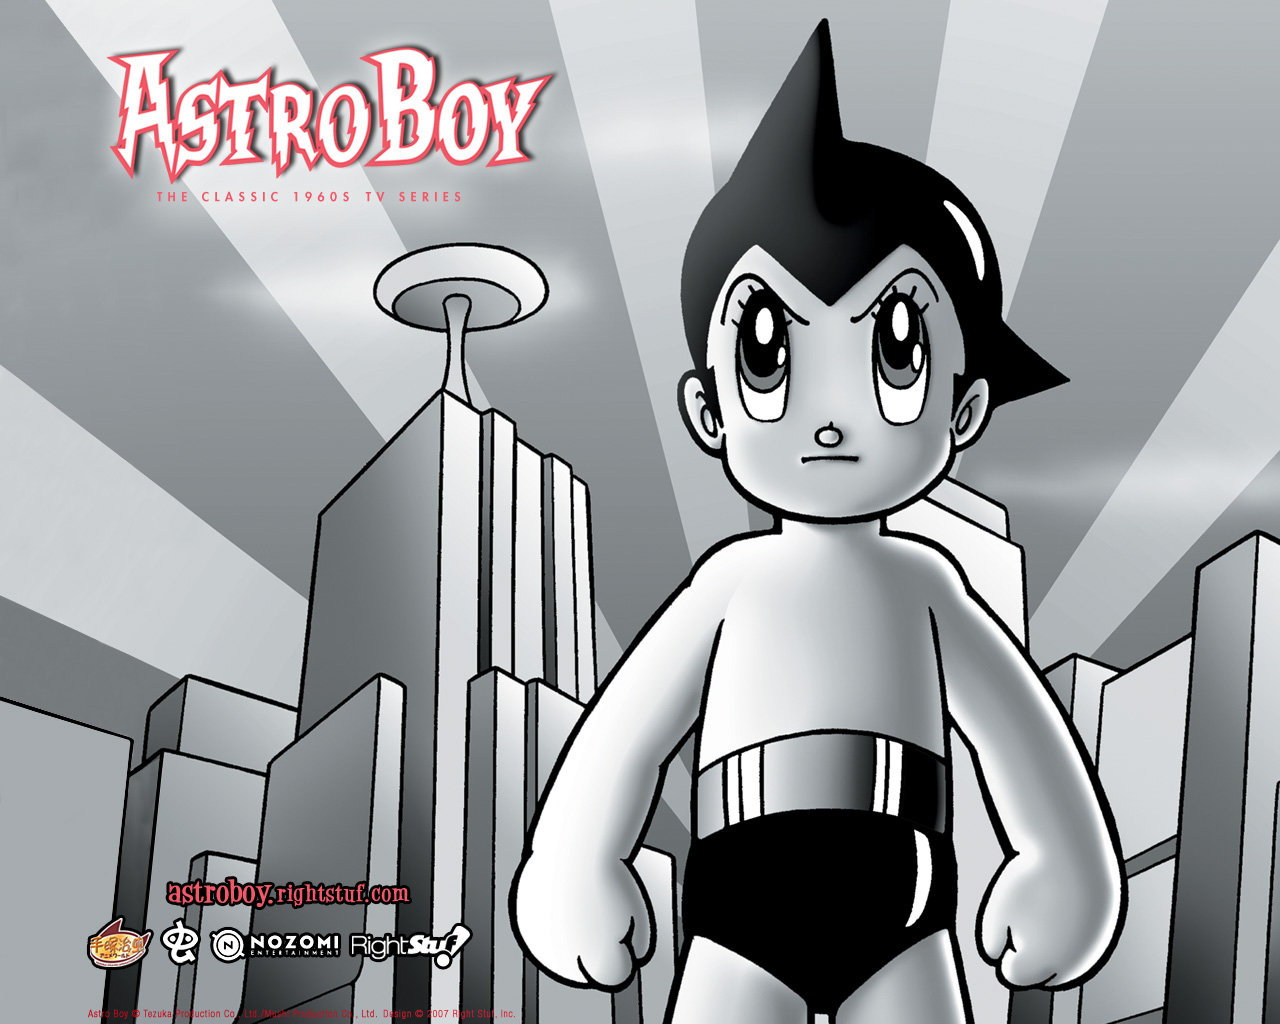 Astro Boy (TV Series 1963–1965) - News - IMDb